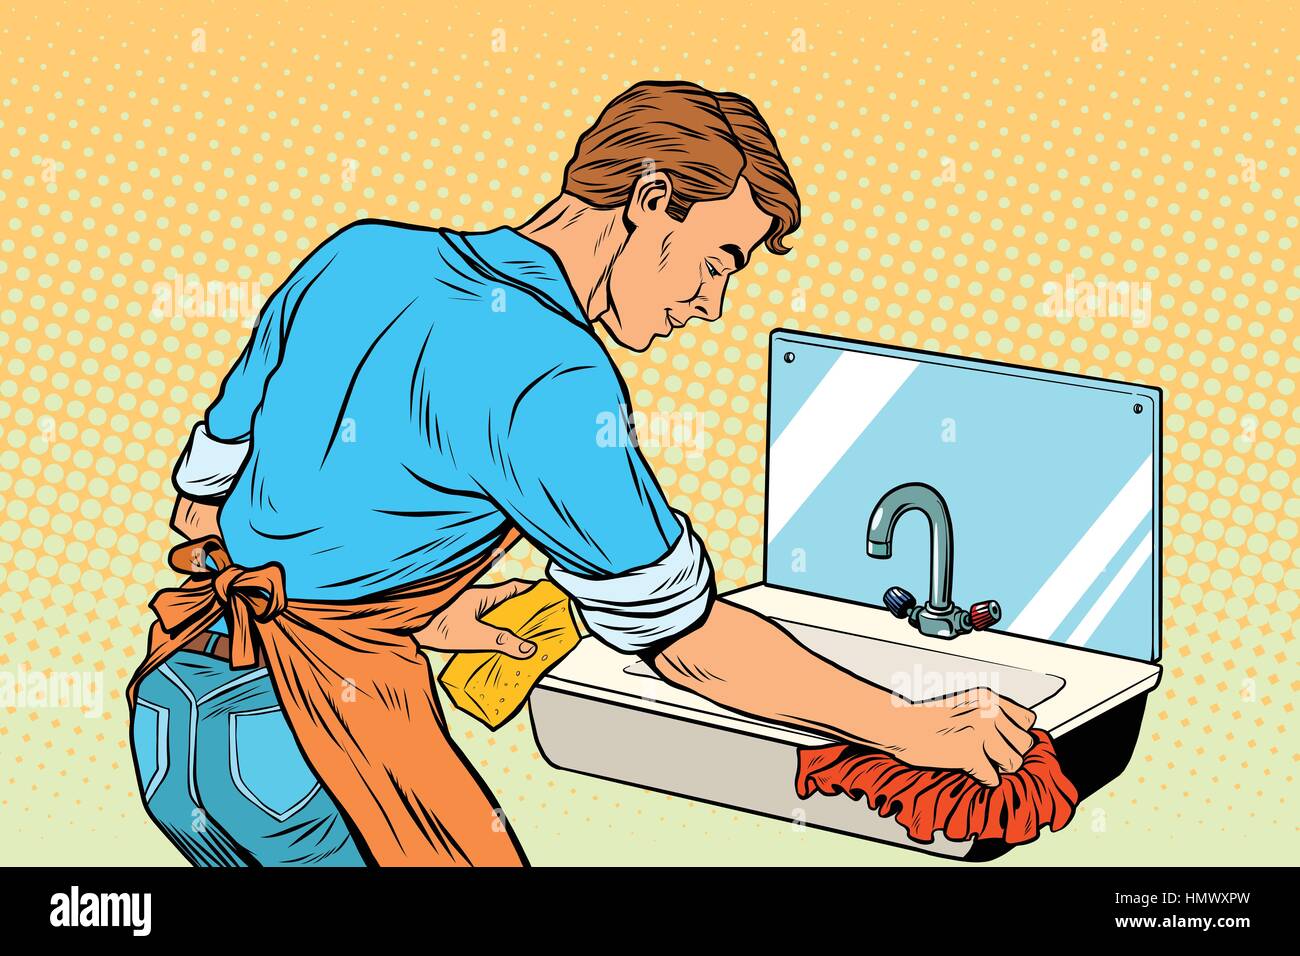 Accueil le nettoyage, le lavage, l'homme travaille d'éviers de cuisine Illustration de Vecteur